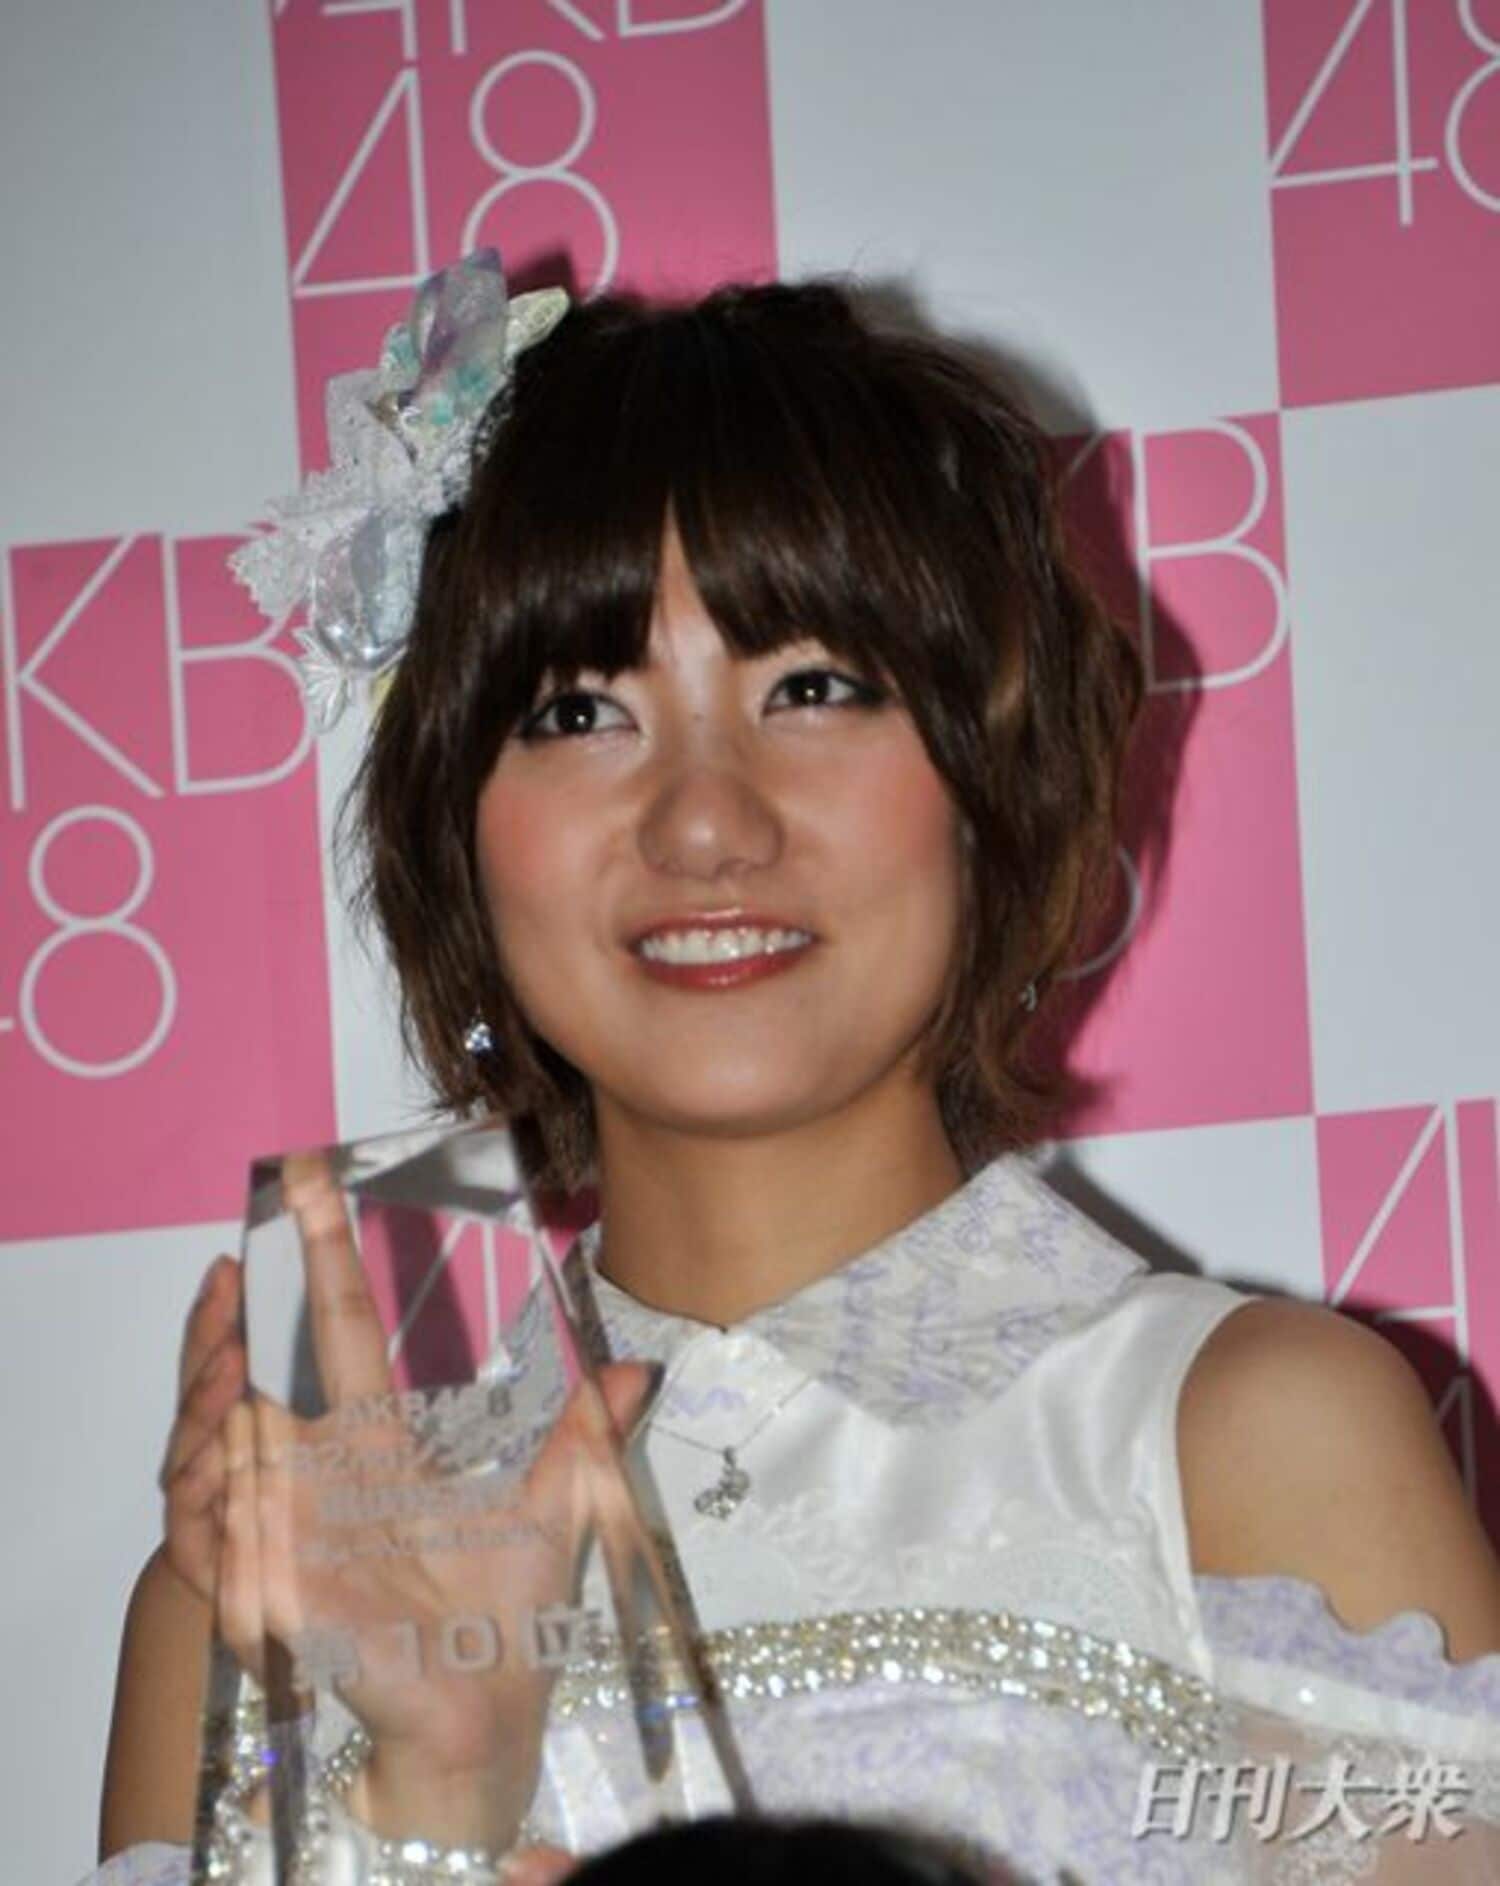 元AKB48宮澤佐江、結婚宣言の須藤凛々花に苦言「契約書に恋愛禁止って書いてある」の画像